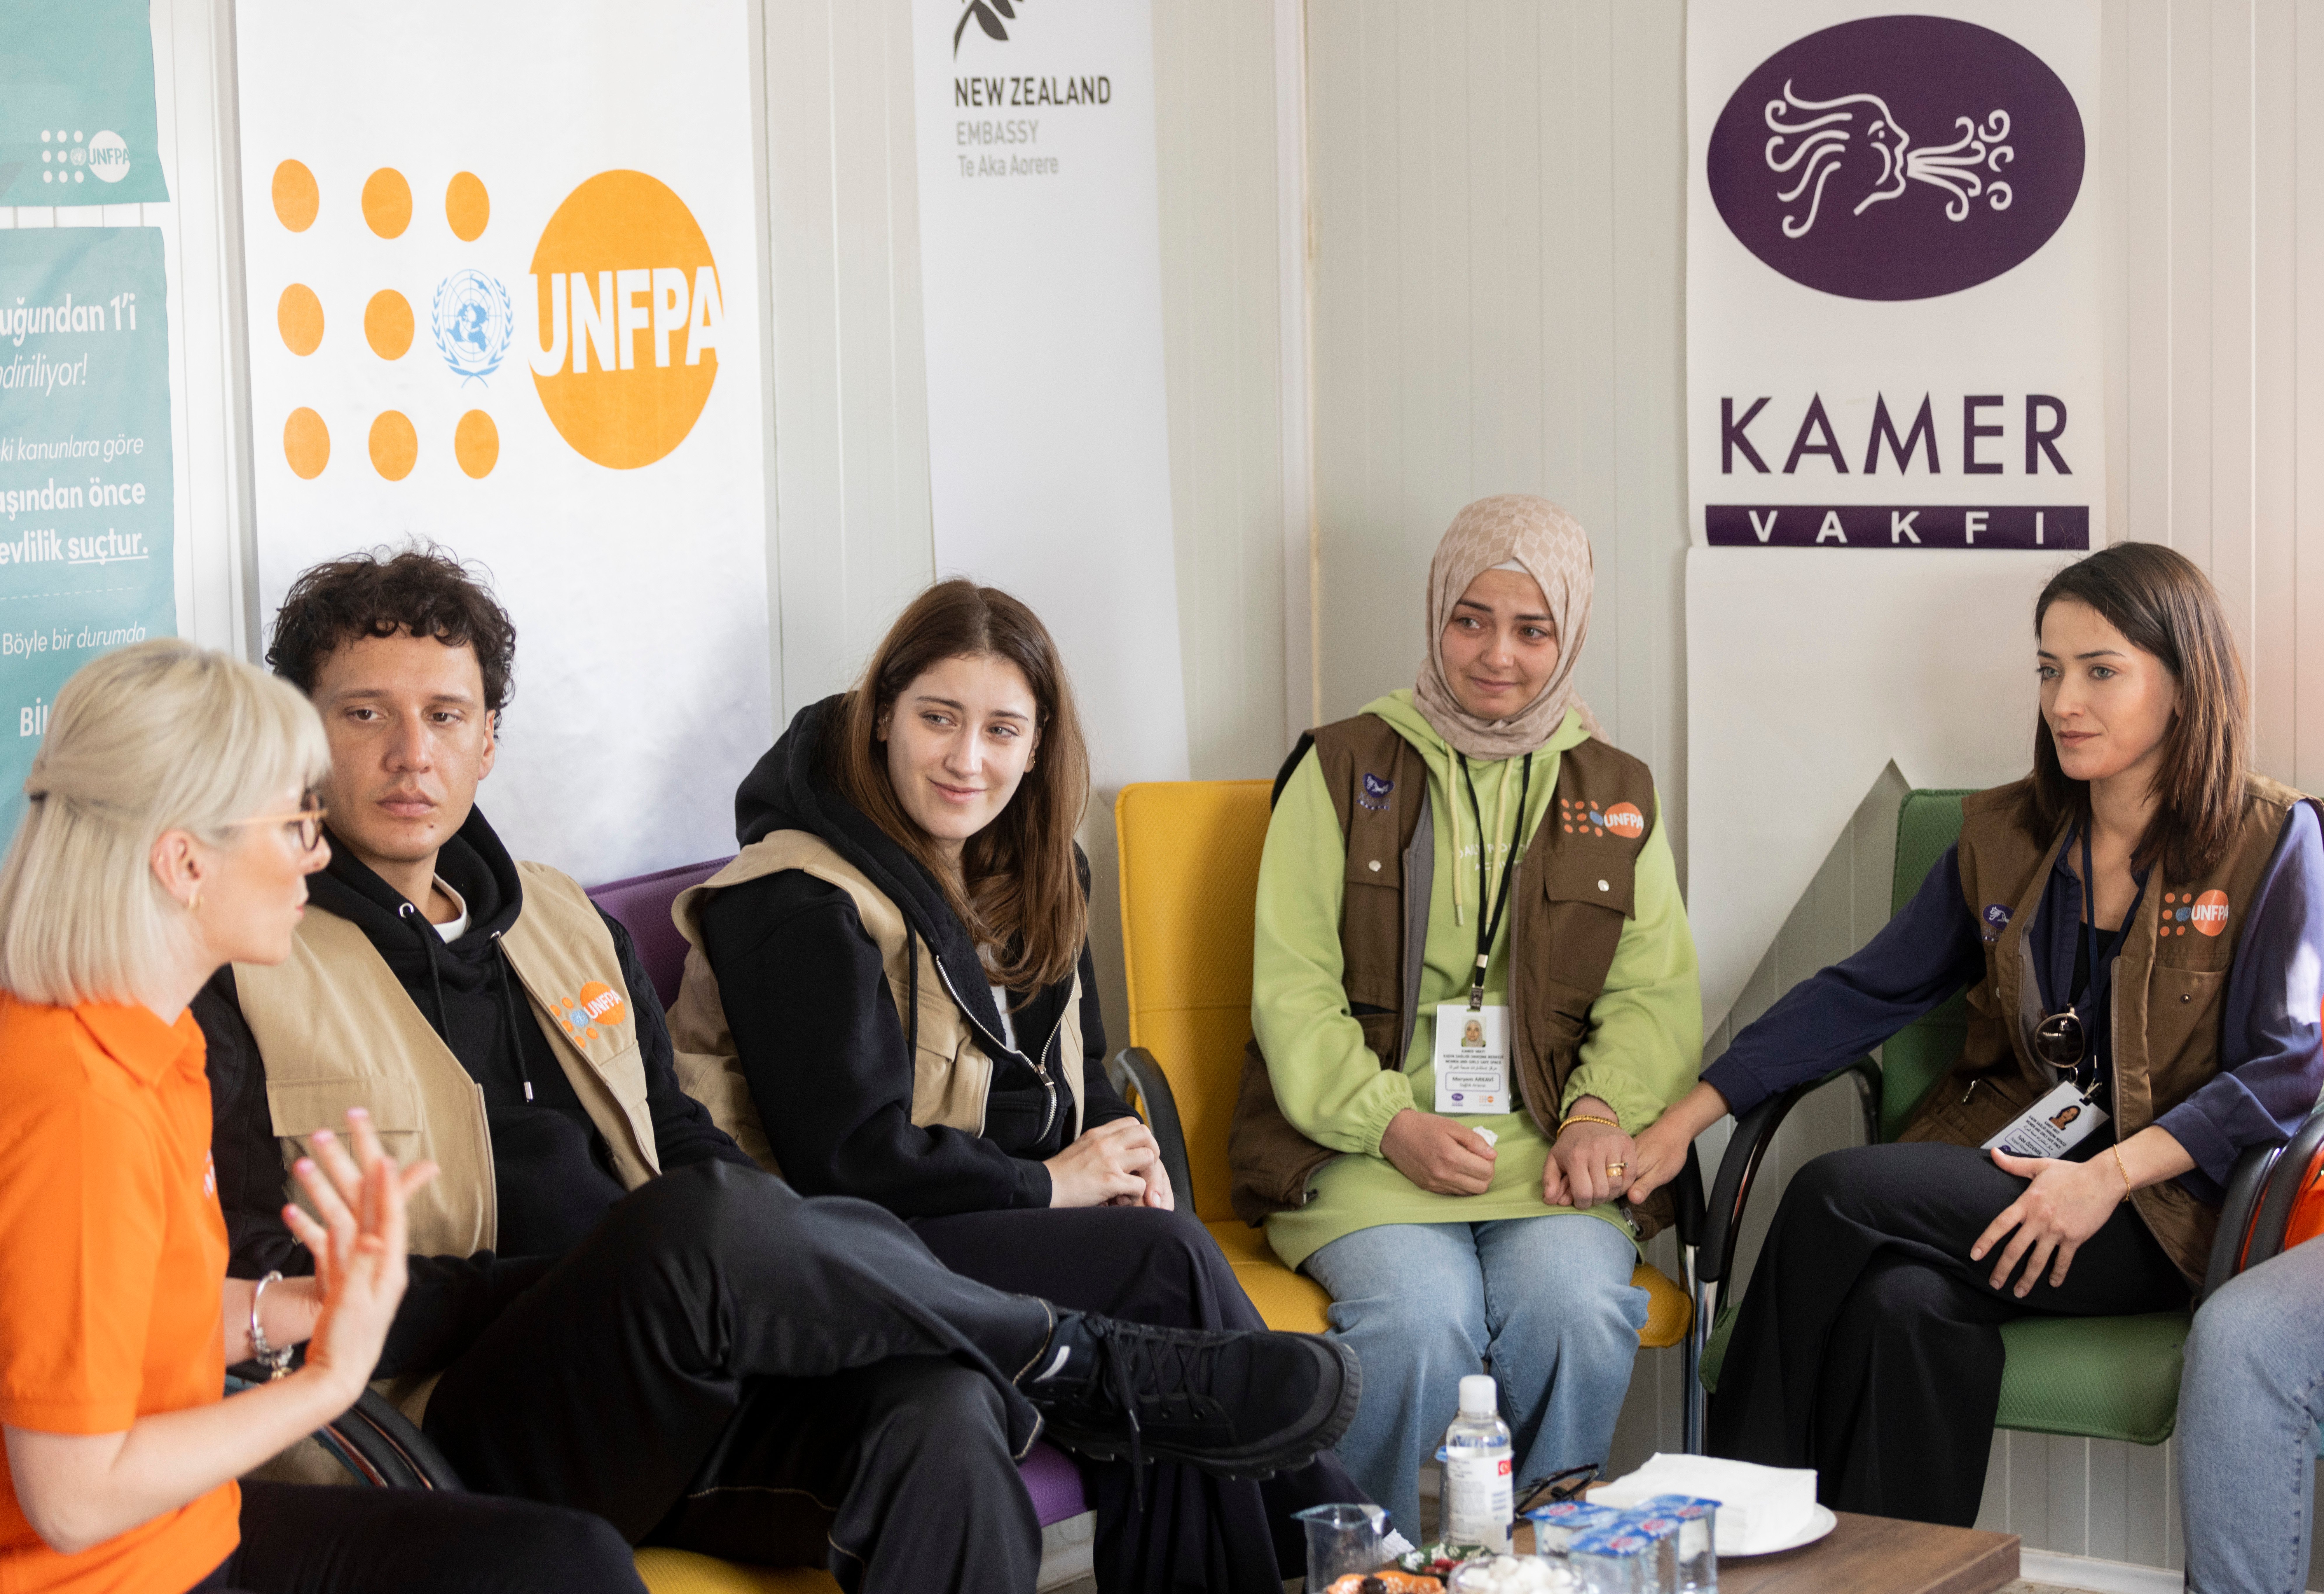 UNFPA Türkiye İyi Niyet Elçileri Hazal Kaya ve Edis, Kahramanmaraş'taki Kadın Sağlığı Danışma Merkezi’ni ziyaret ederek yararlanıcılarla görüşmektedir. Arka duvarda ise UNFPA, Yeni Zelanda Büyükelçiliği ve Kamer logolarının yer aldığı bayraklar yer görünür.